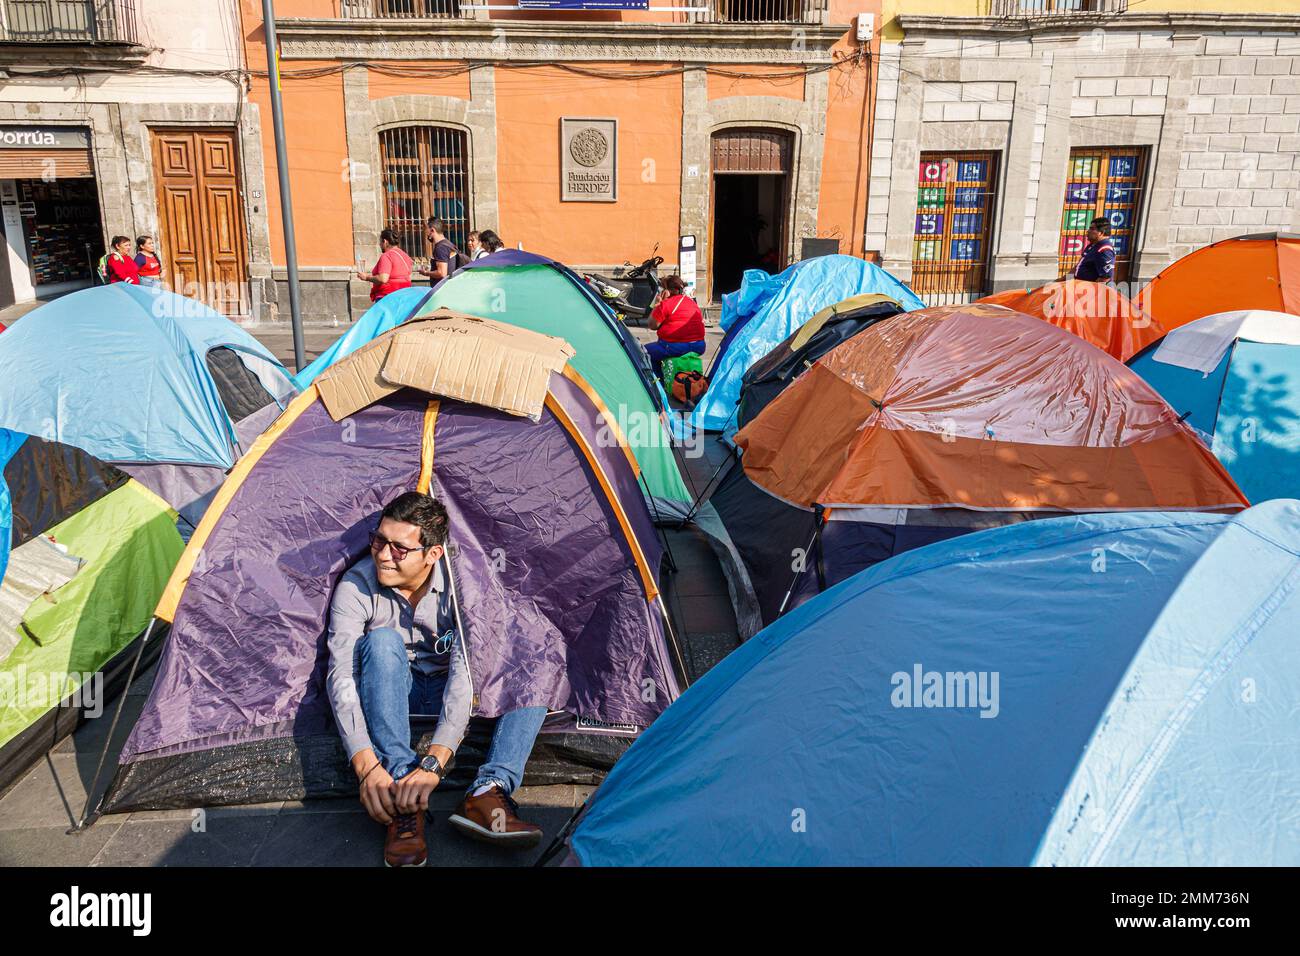 Mexico, centre historique, Historico Centro, Zocalo Plaza de la Constitucion, enseignants enseignants éducateurs protestent camping tentes dormir-dans la démonstration Banque D'Images